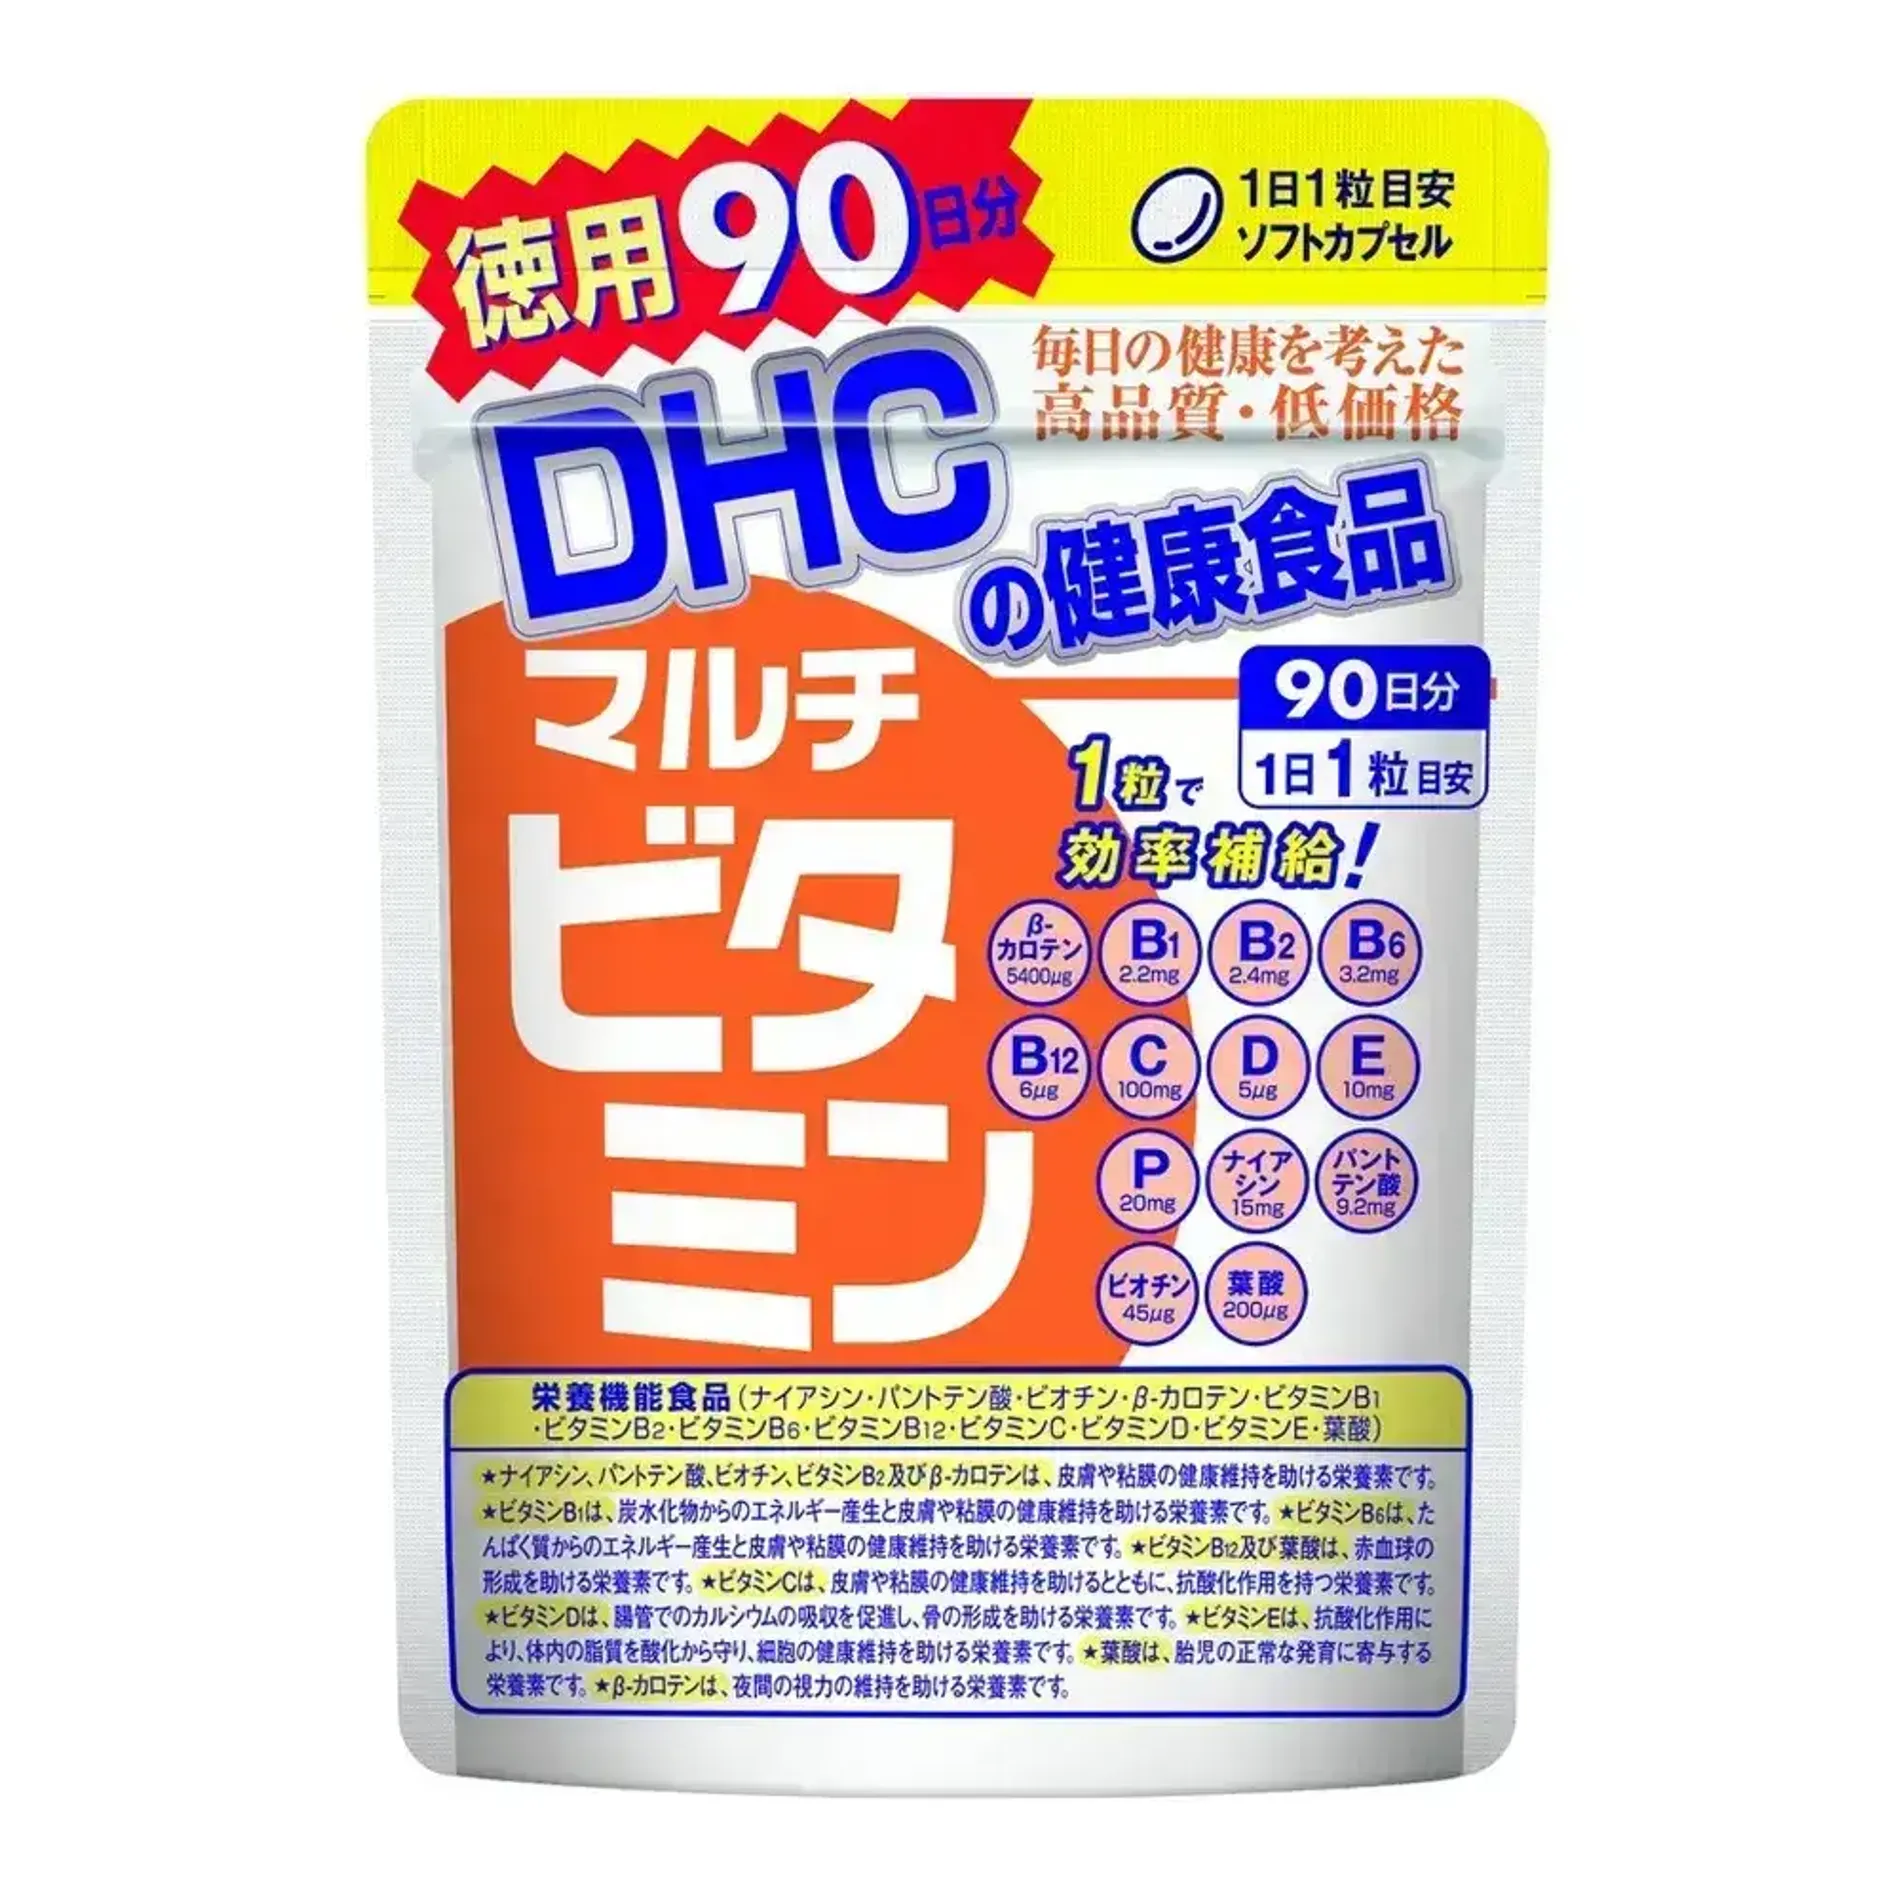 vien-uong-vitamin-tong-hop-nhat-ban-dhc-multi-vitamins-2